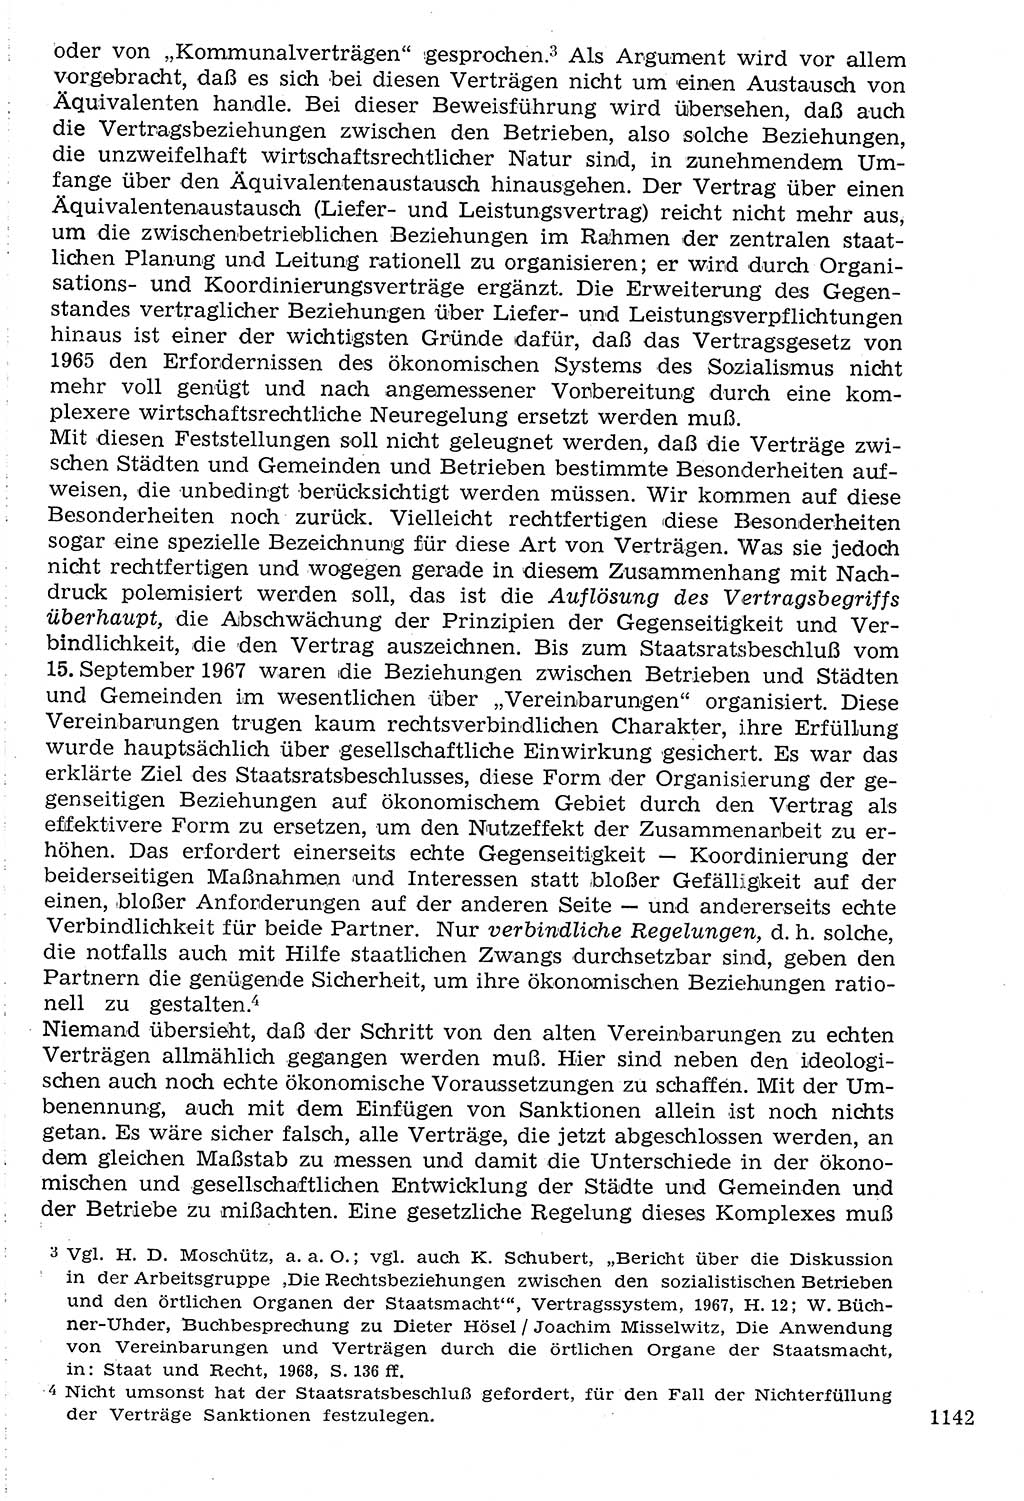 Staat und Recht (StuR), 17. Jahrgang [Deutsche Demokratische Republik (DDR)] 1968, Seite 1142 (StuR DDR 1968, S. 1142)